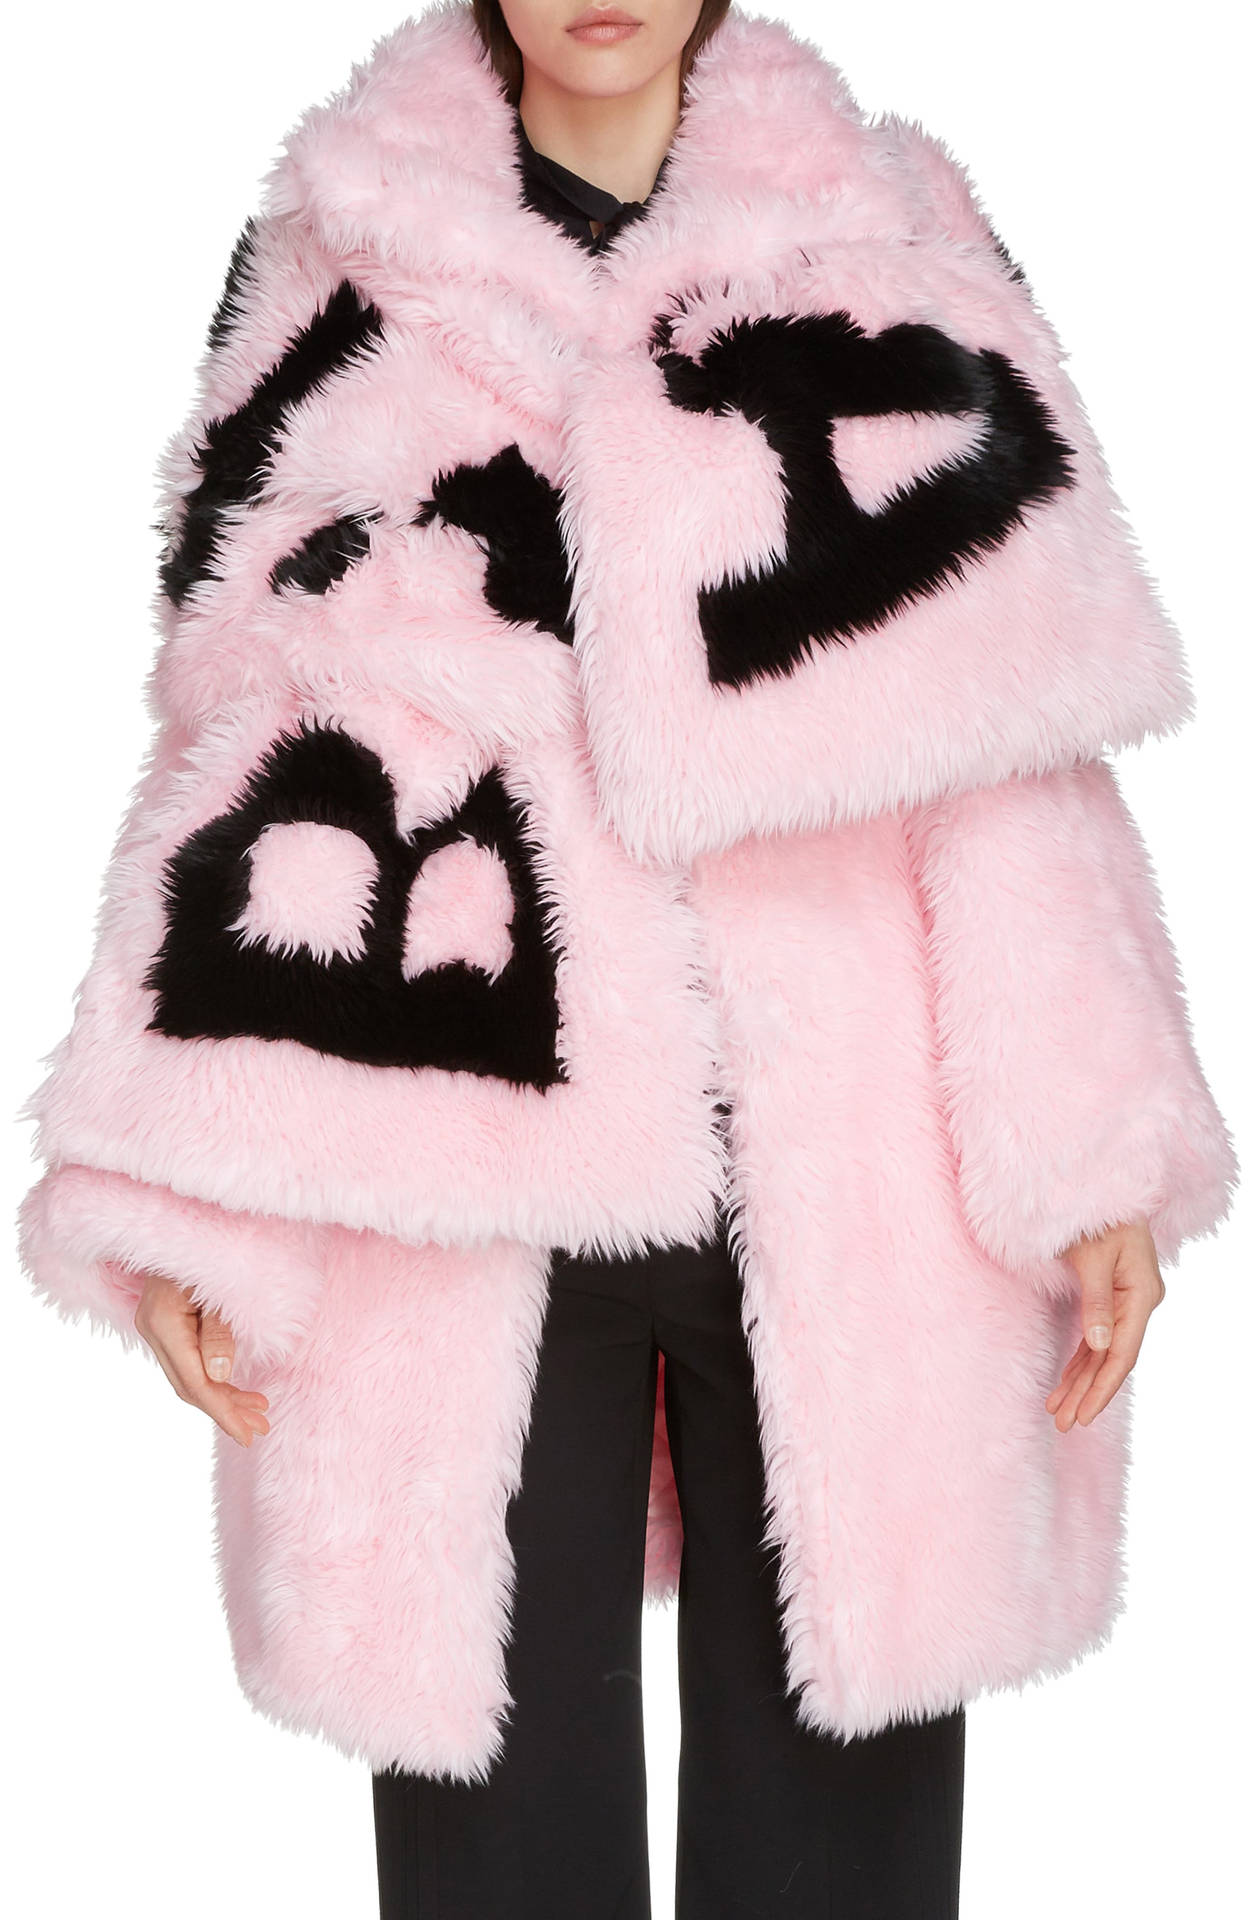 Balenciaga Pink Fur Coat Wallpaper